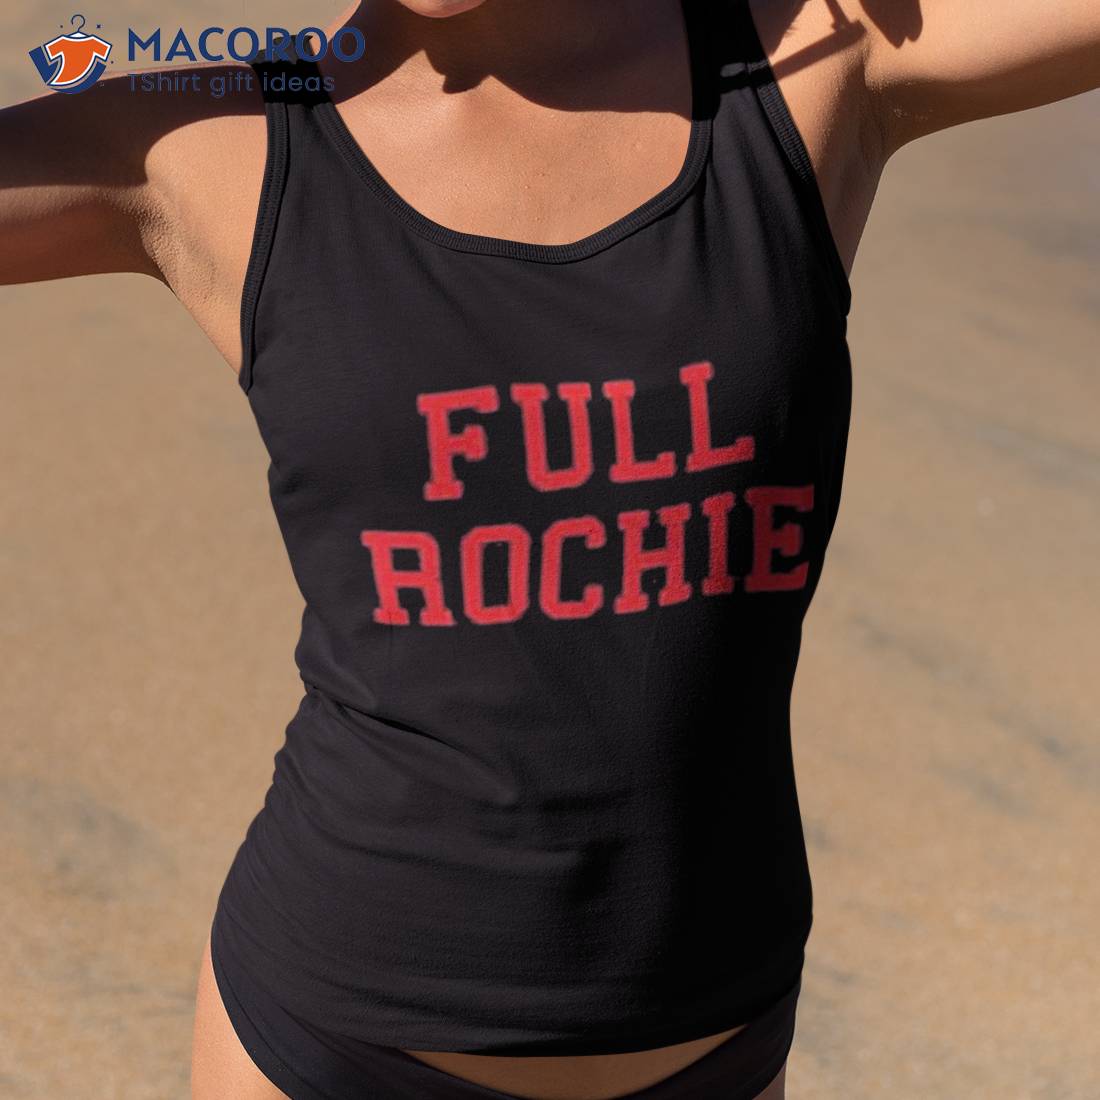 Dan Roche Full Rochie Shirt